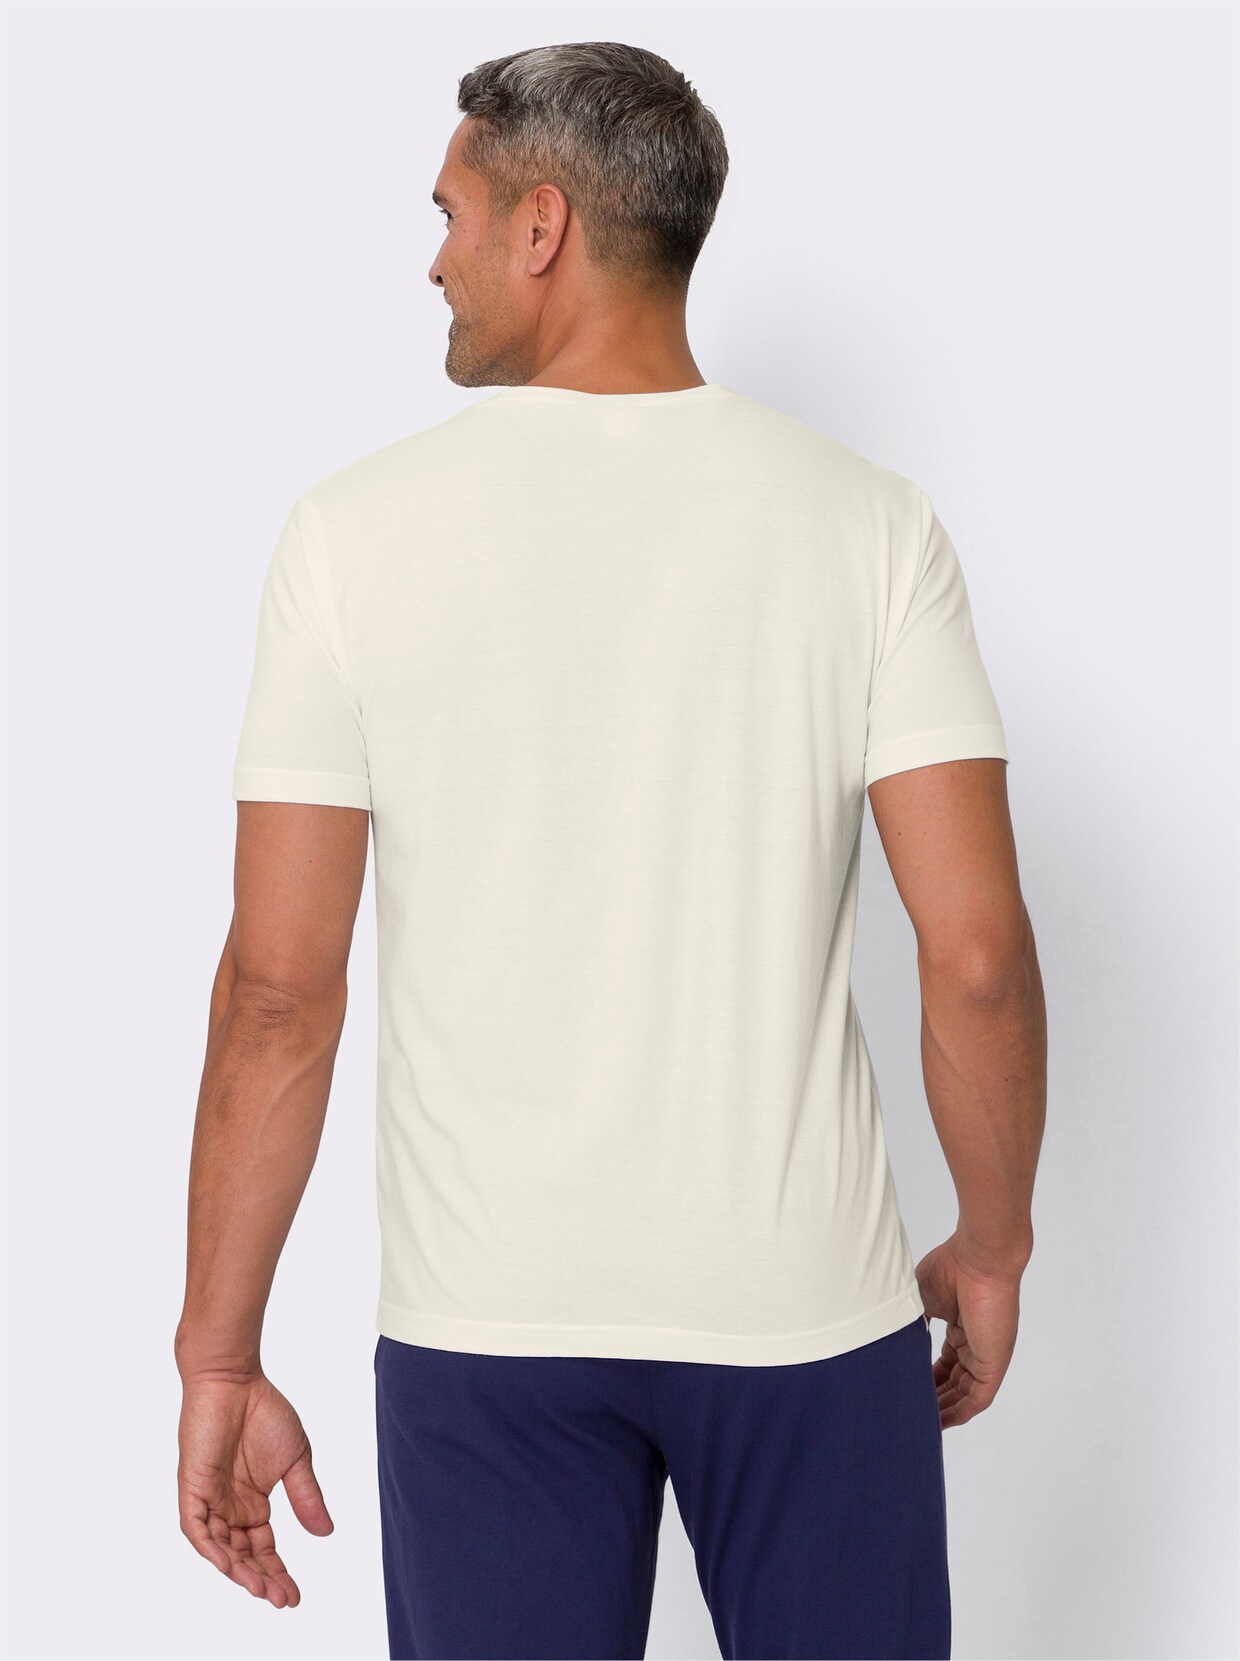 Voľnočasové tričko - Biela-tmavosivá